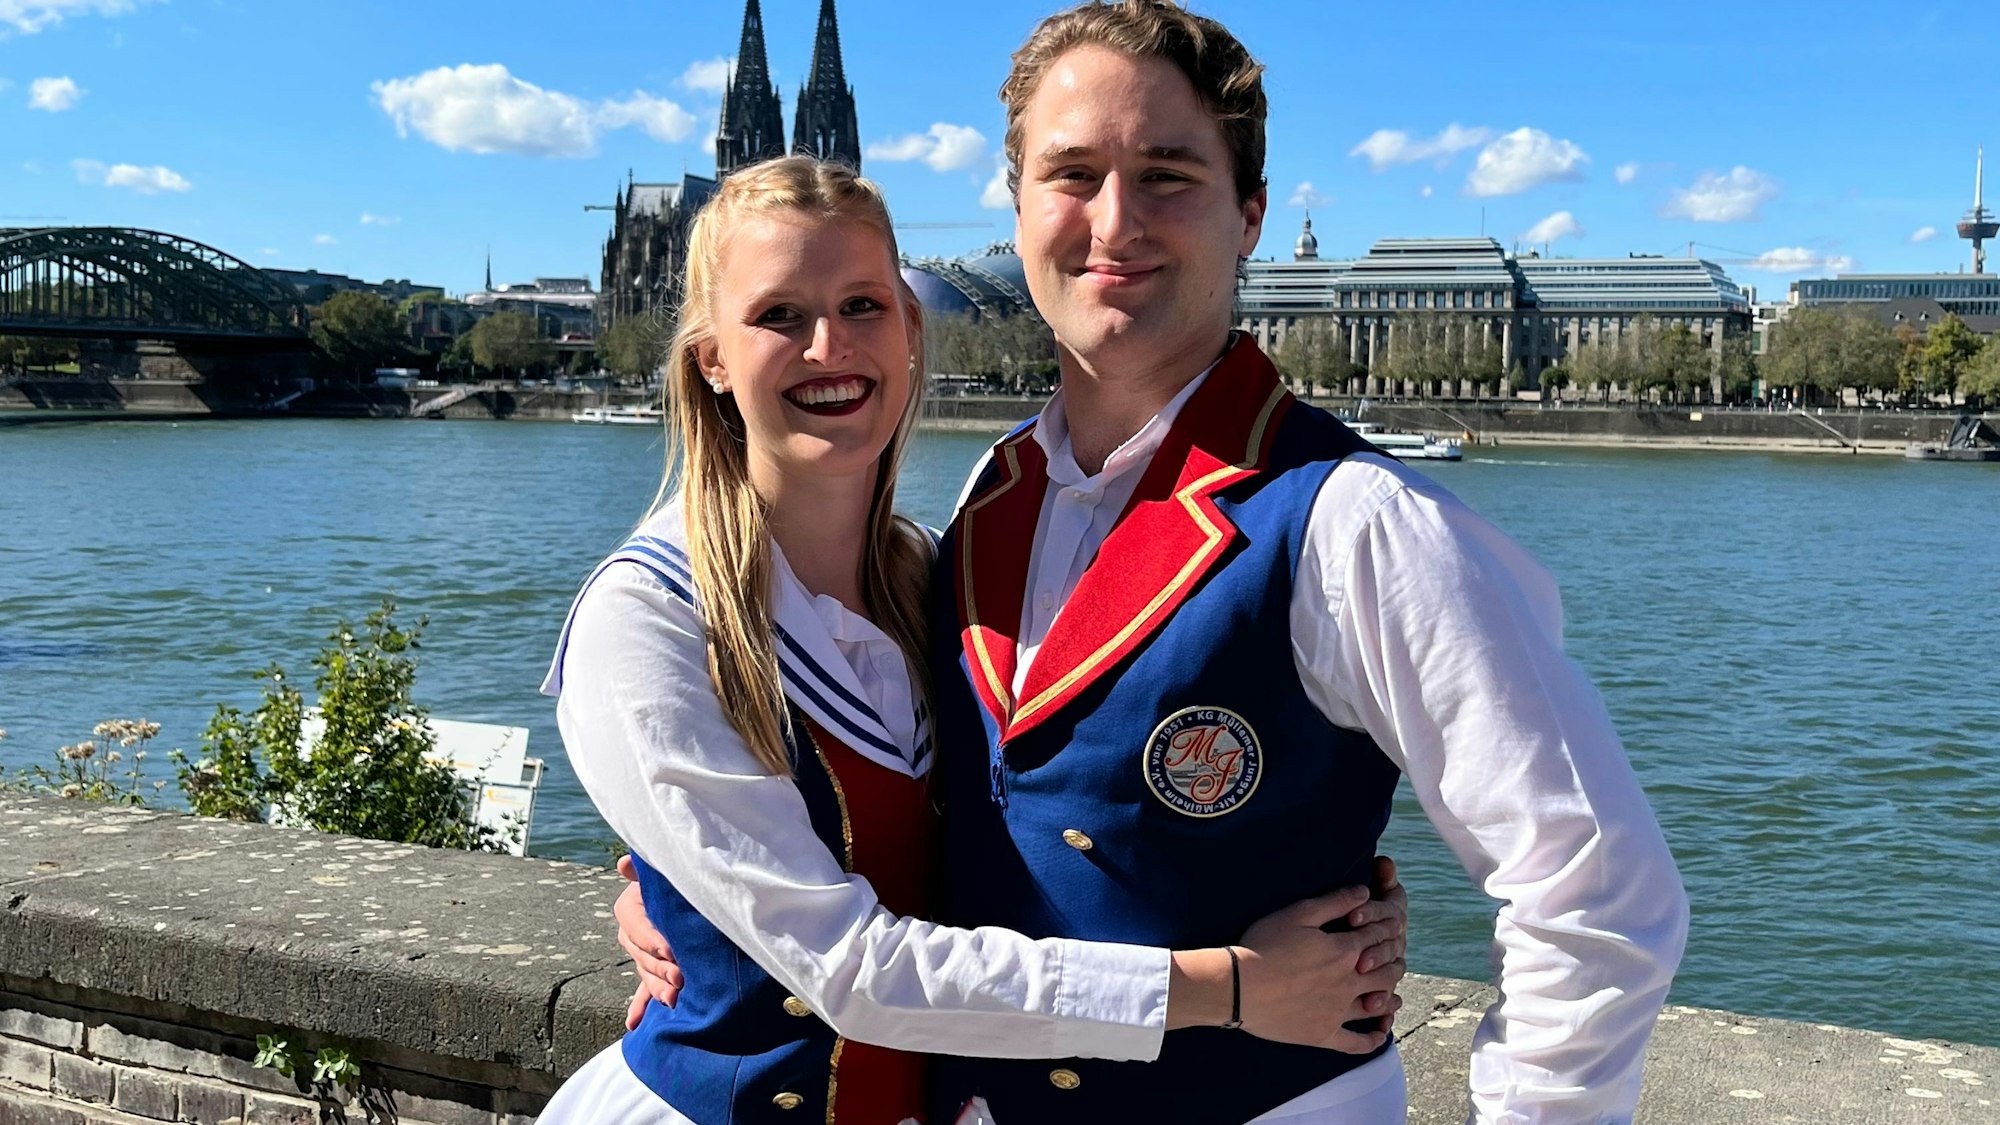 Paulina Dinspel und Matthias Mainz in Tanz-Uniform.